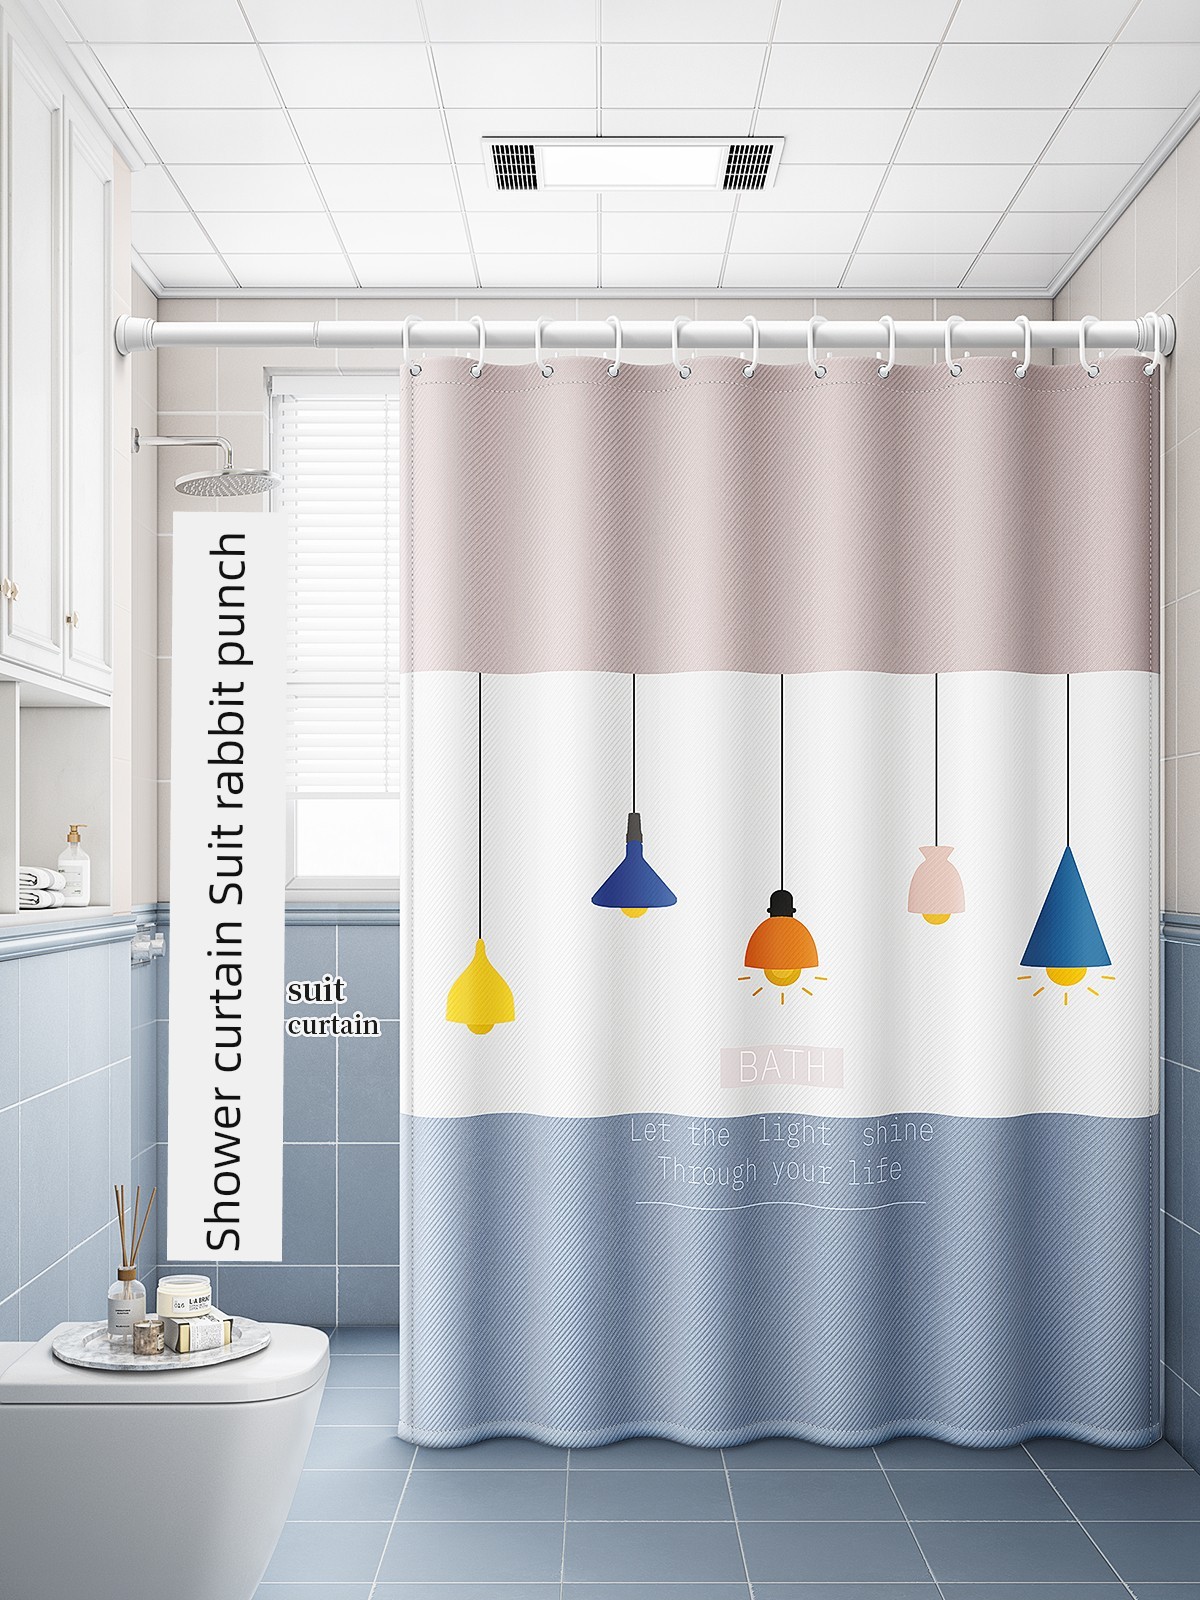 獨特北歐風 浴室浴簾套裝 免打孔安裝 隔段門簾 防水防黴布